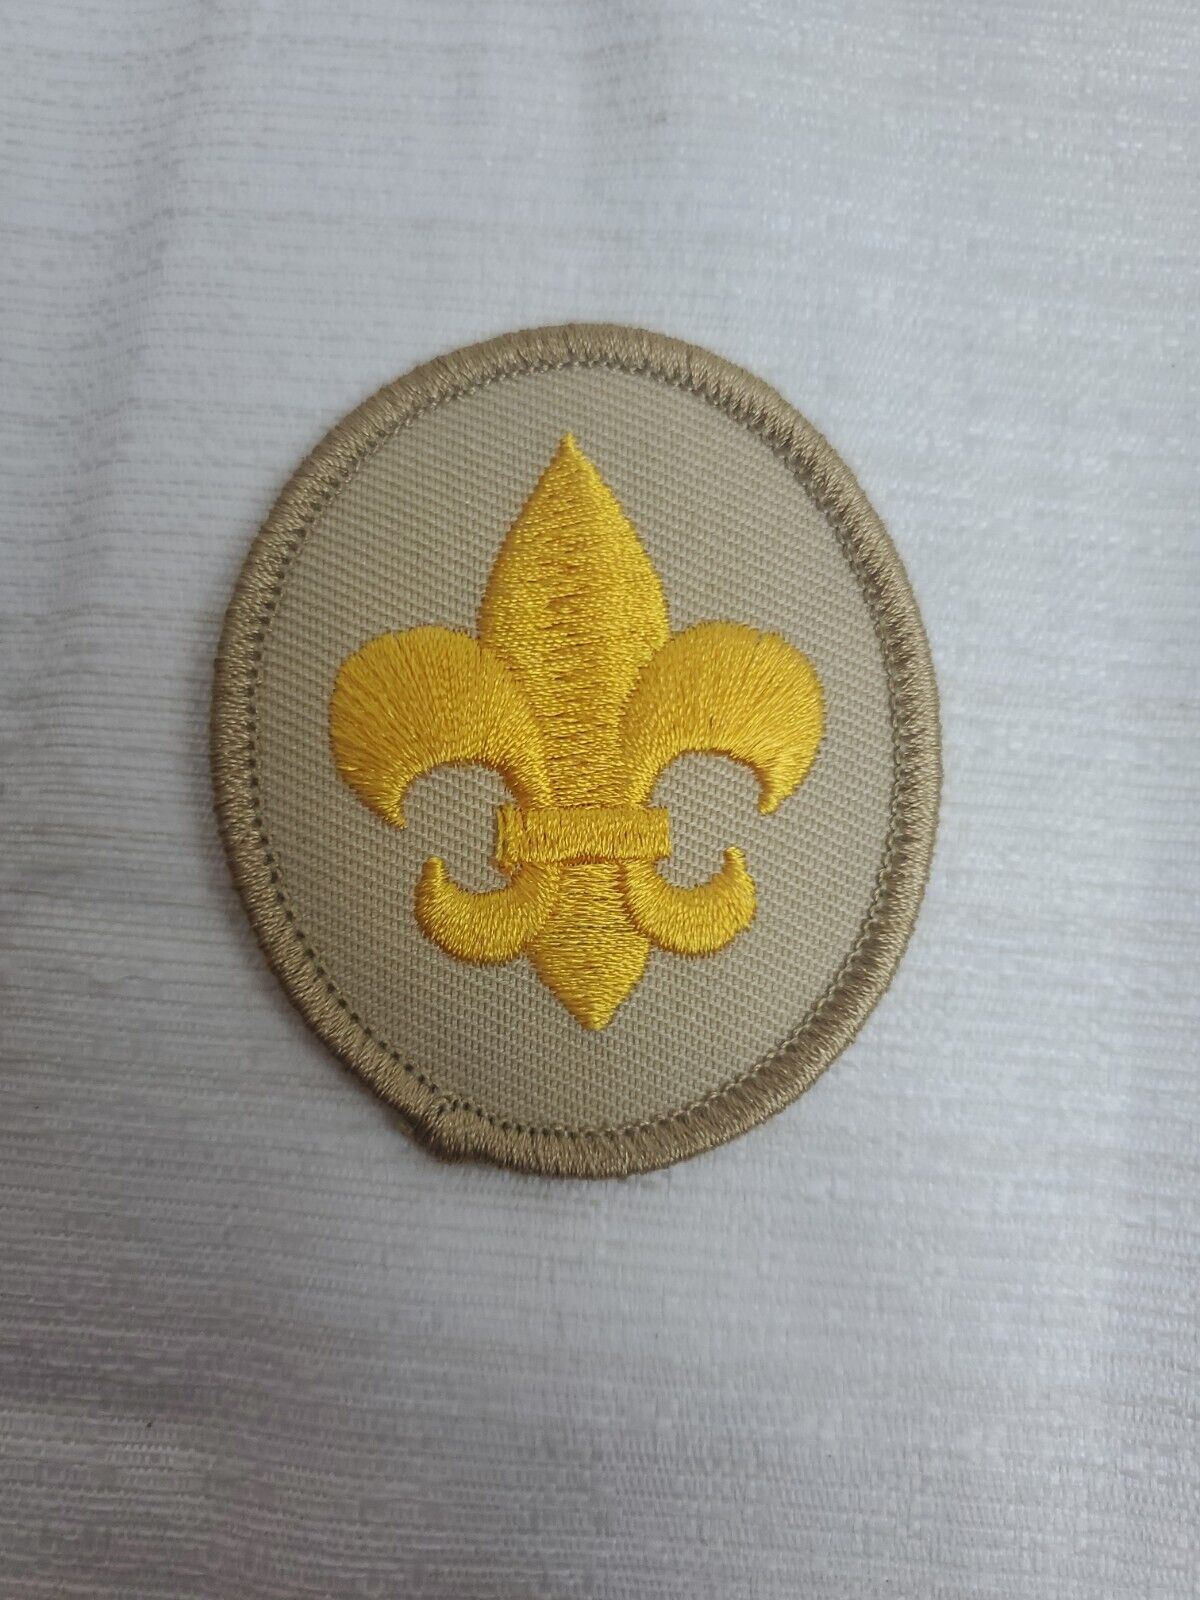 Scouts BSA Scout Rank emblem